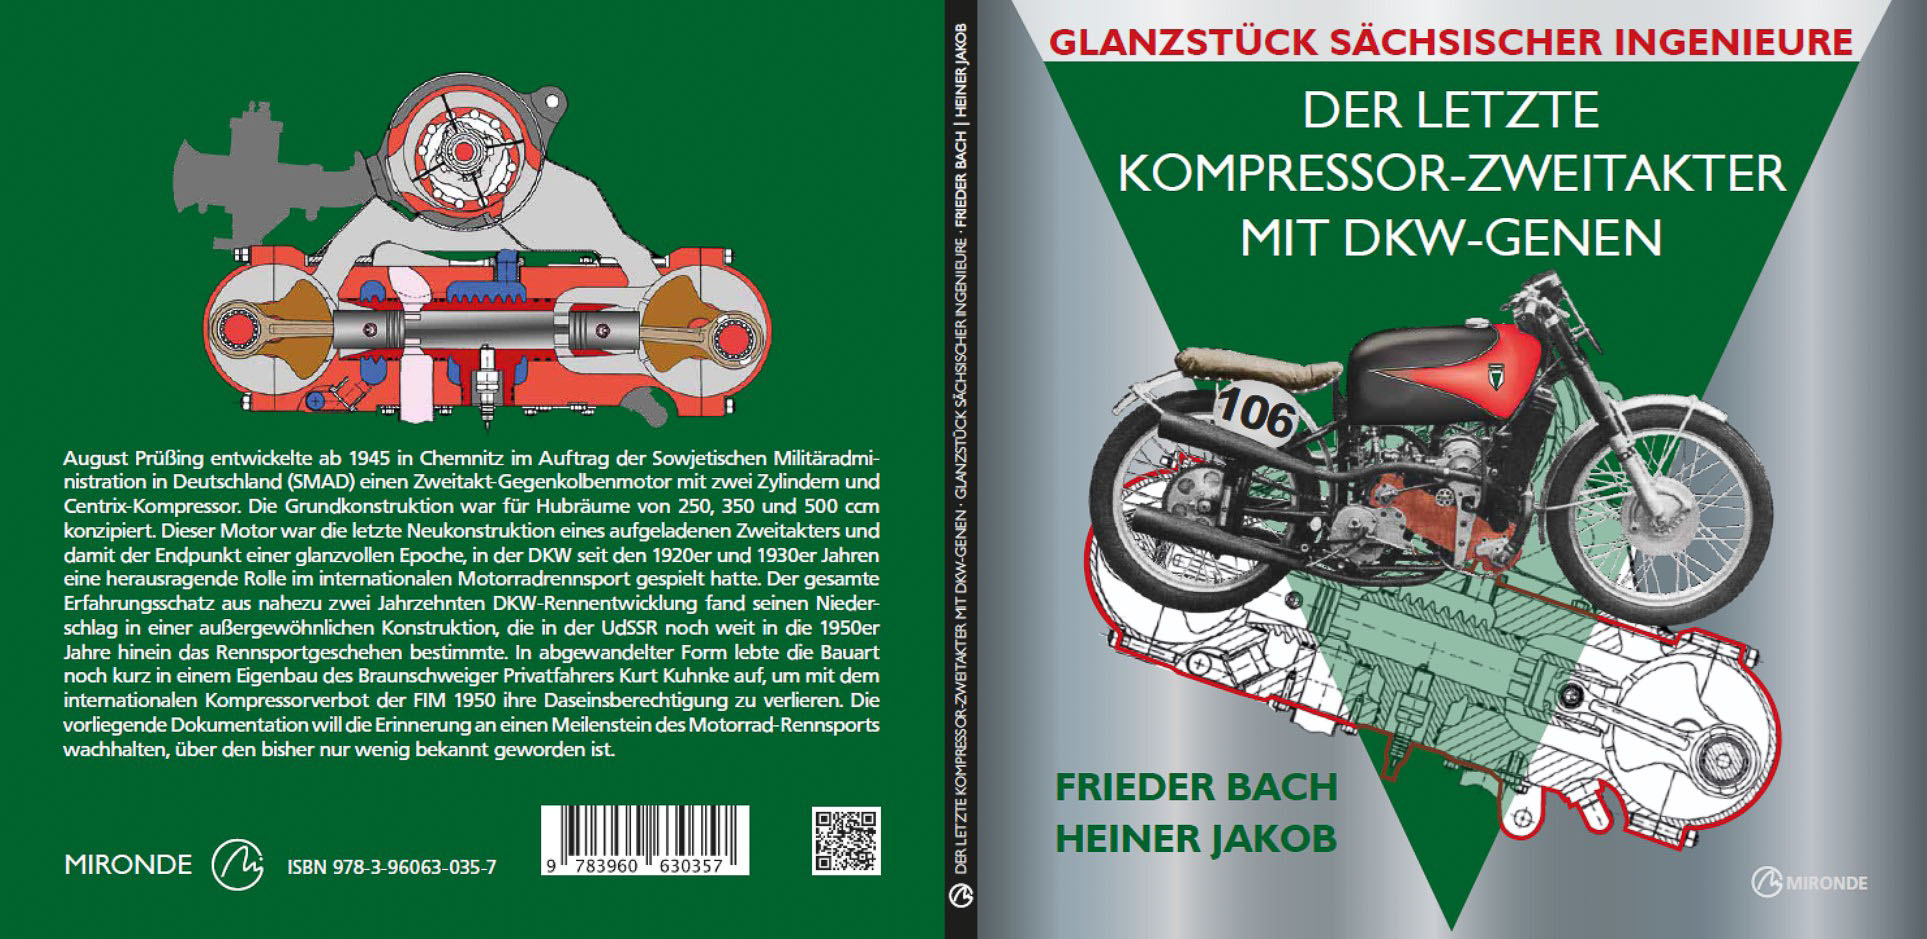 Der letzte Kompressor-Zweitakter mit DKW-Genen